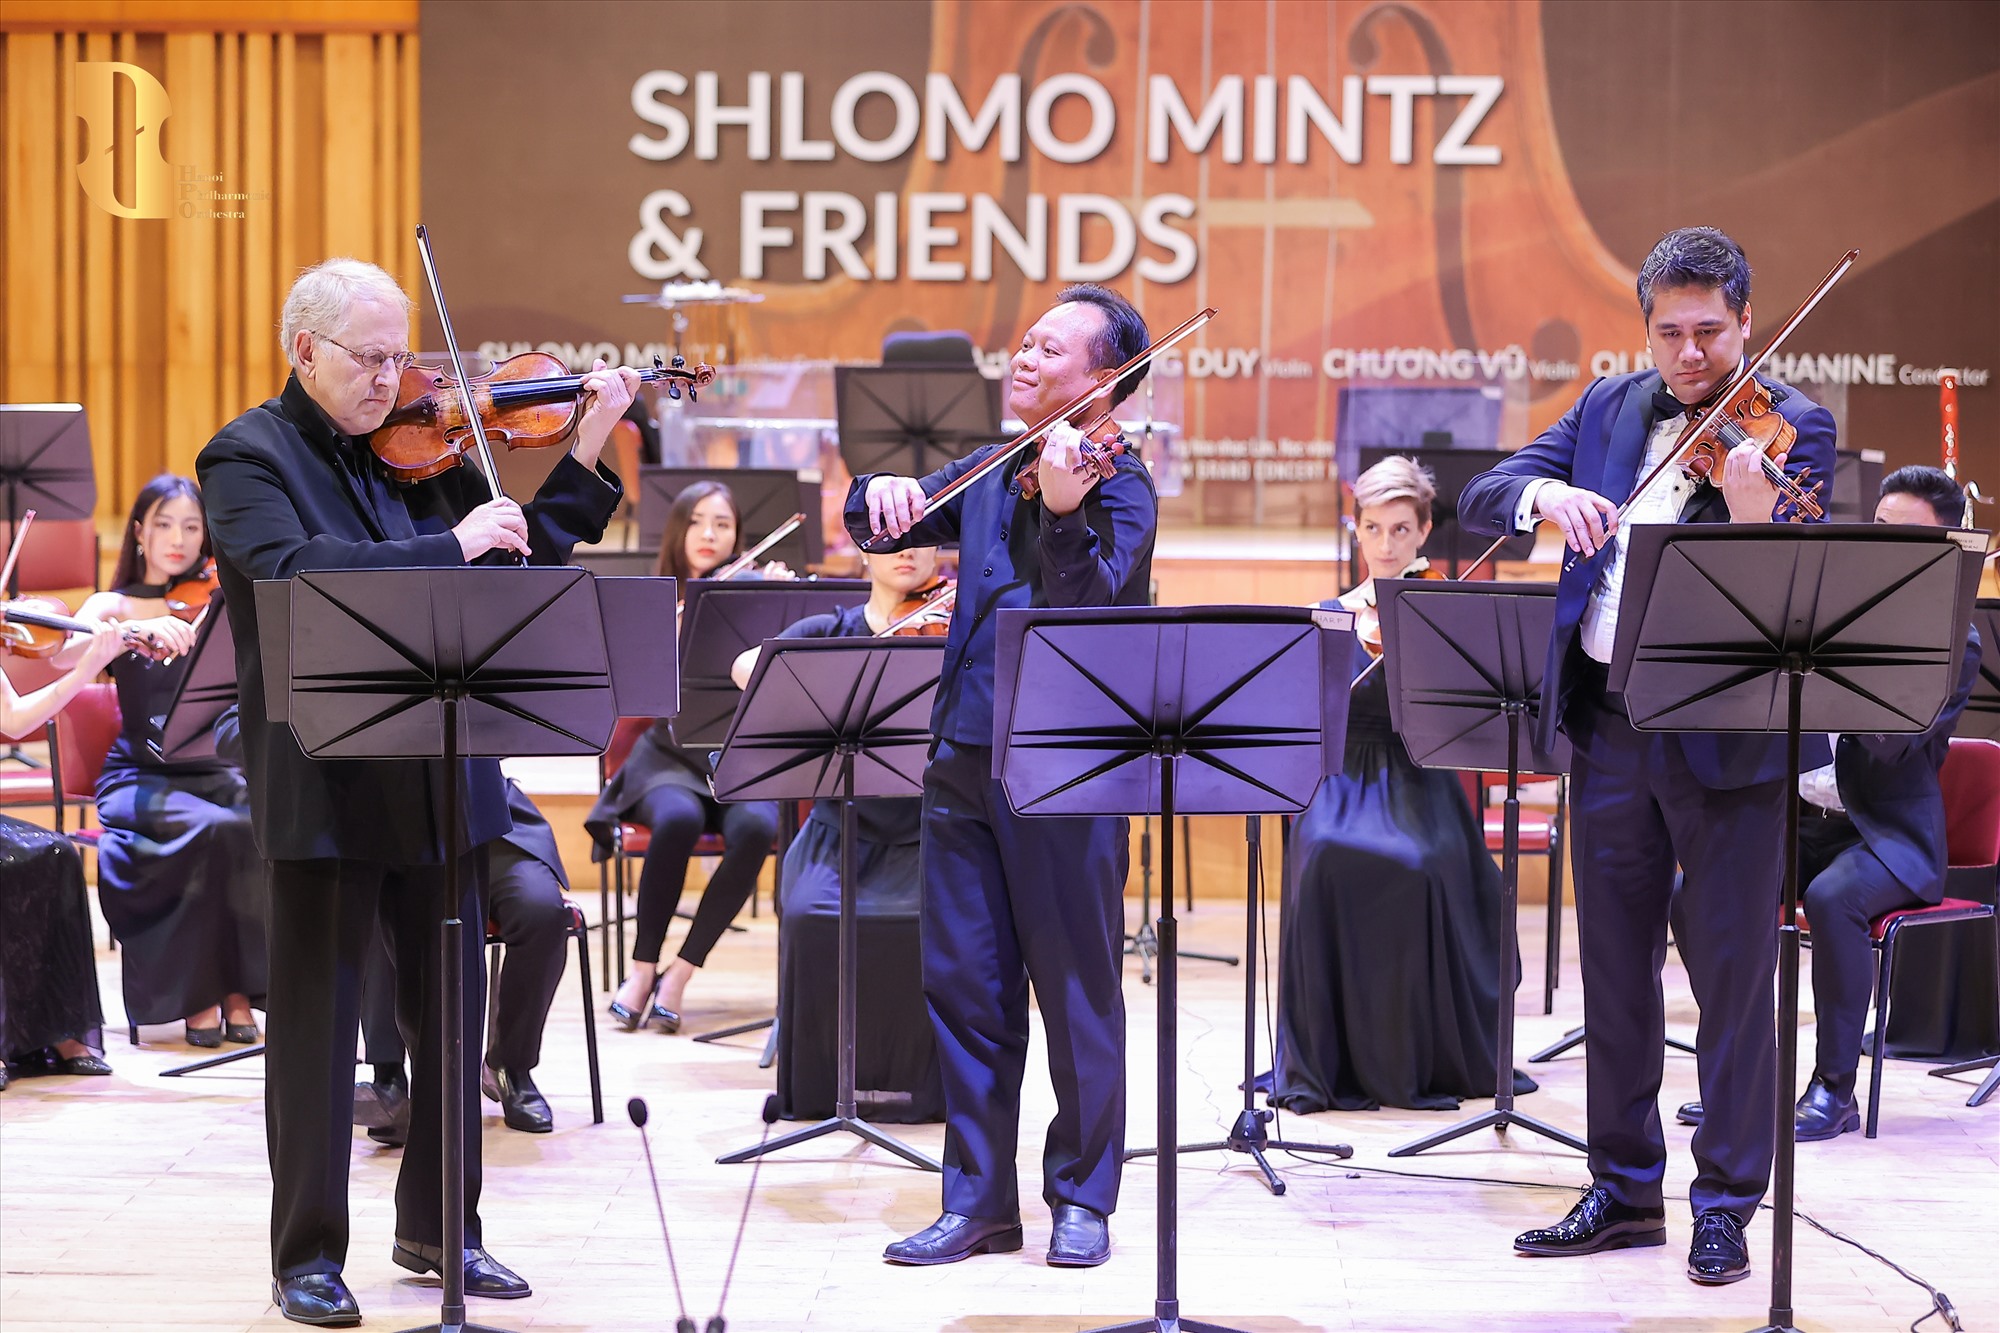 Huyền thoại Shlomo Mintz thăng hoa cùng hai nghệ sĩ violin nổi tiếng Việt Nam - Bùi Công Duy và Chương Vũ. Ảnh: BTC